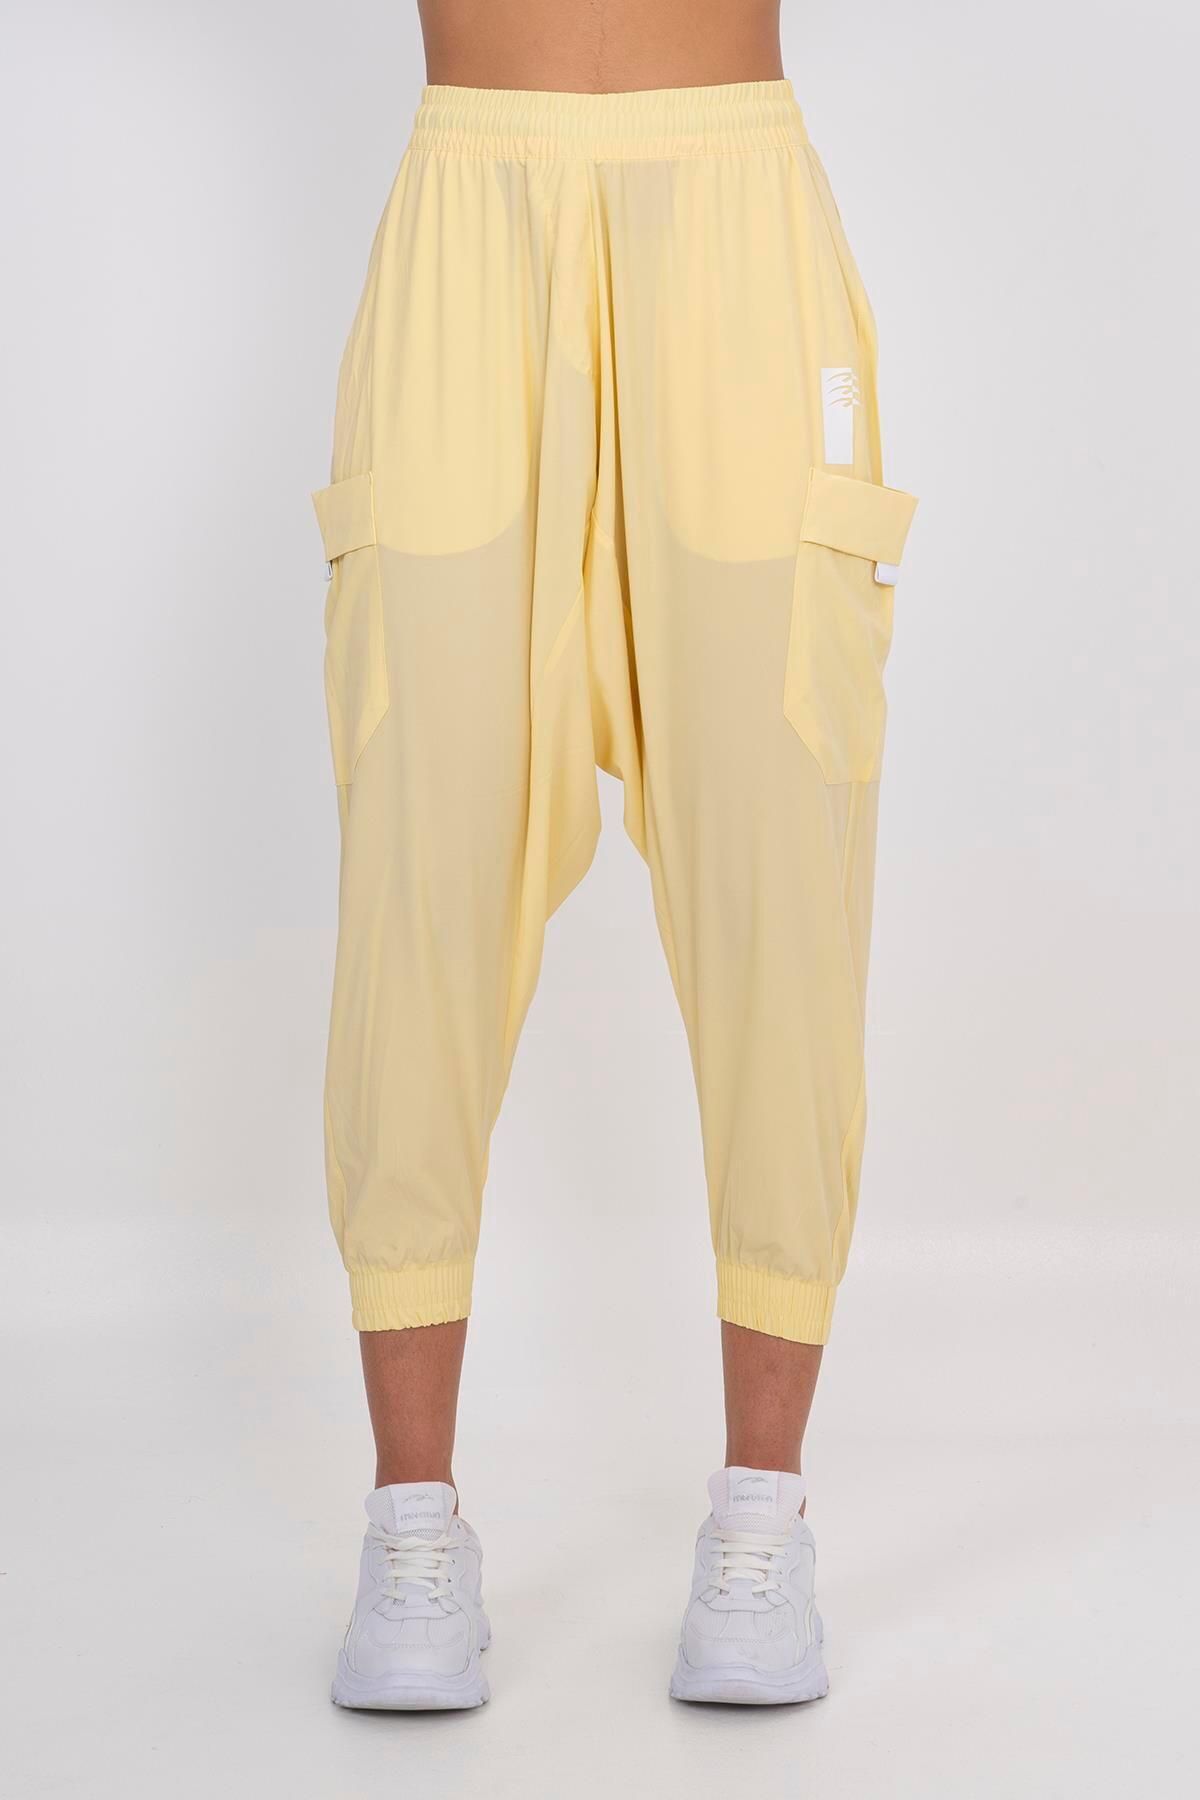 MARATON Sportswear Comfort Kadın Lastik Paça Basic Açık Sarı Pantolon 21093